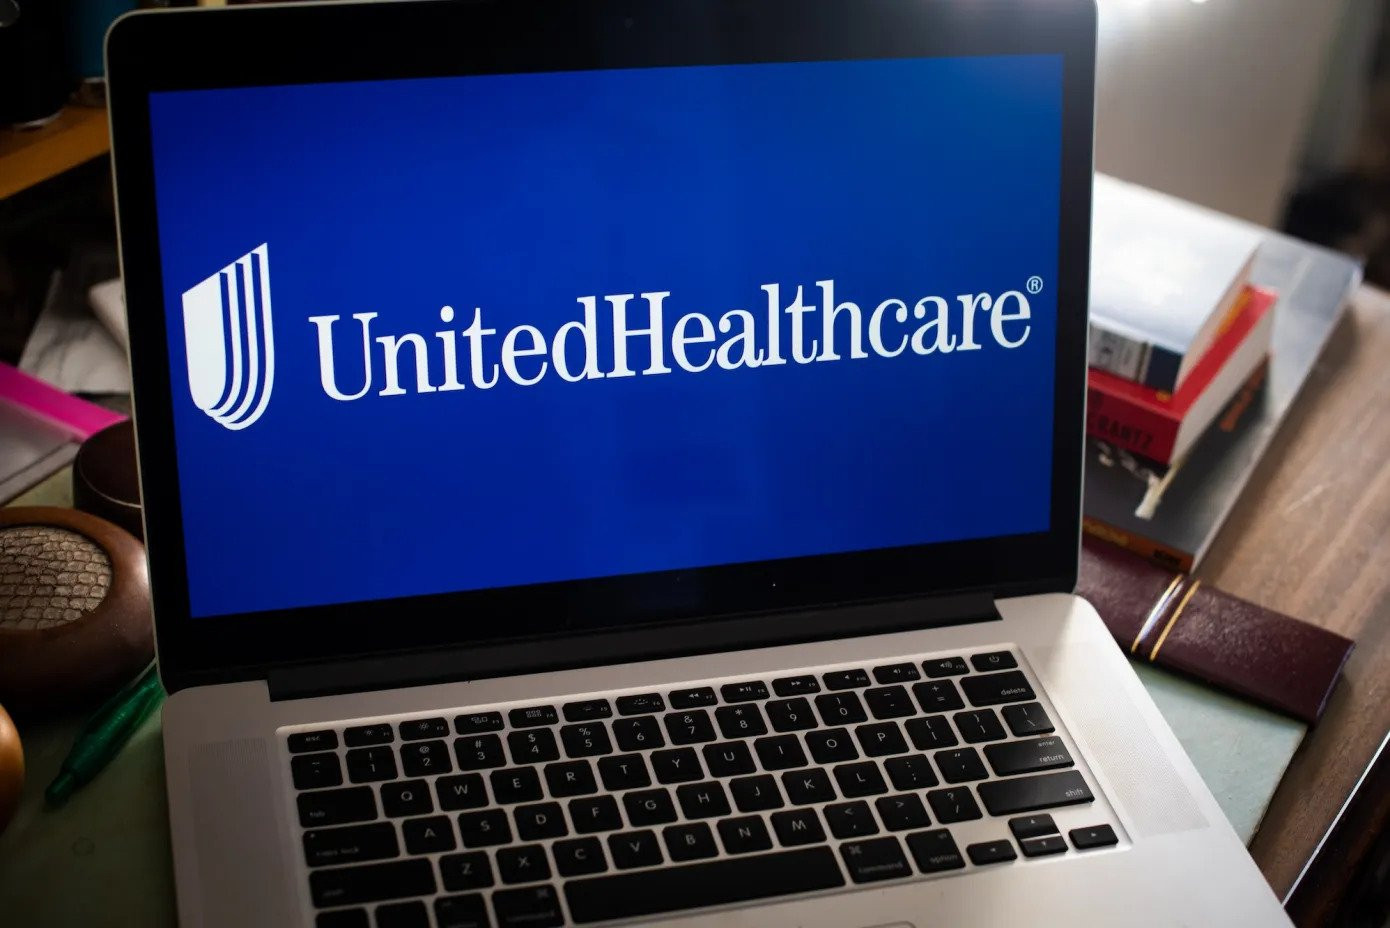 Change Healthcare sáp nhập với nhà cung cấp dịch vụ chăm sóc sức khỏe Optum vào năm 2022 như một phần của thỏa thuận trị giá 7,8 tỷ USD với UnitedHealth Group. Ảnh: Tiffany Hagler-Geard / Bloomberg / Getty